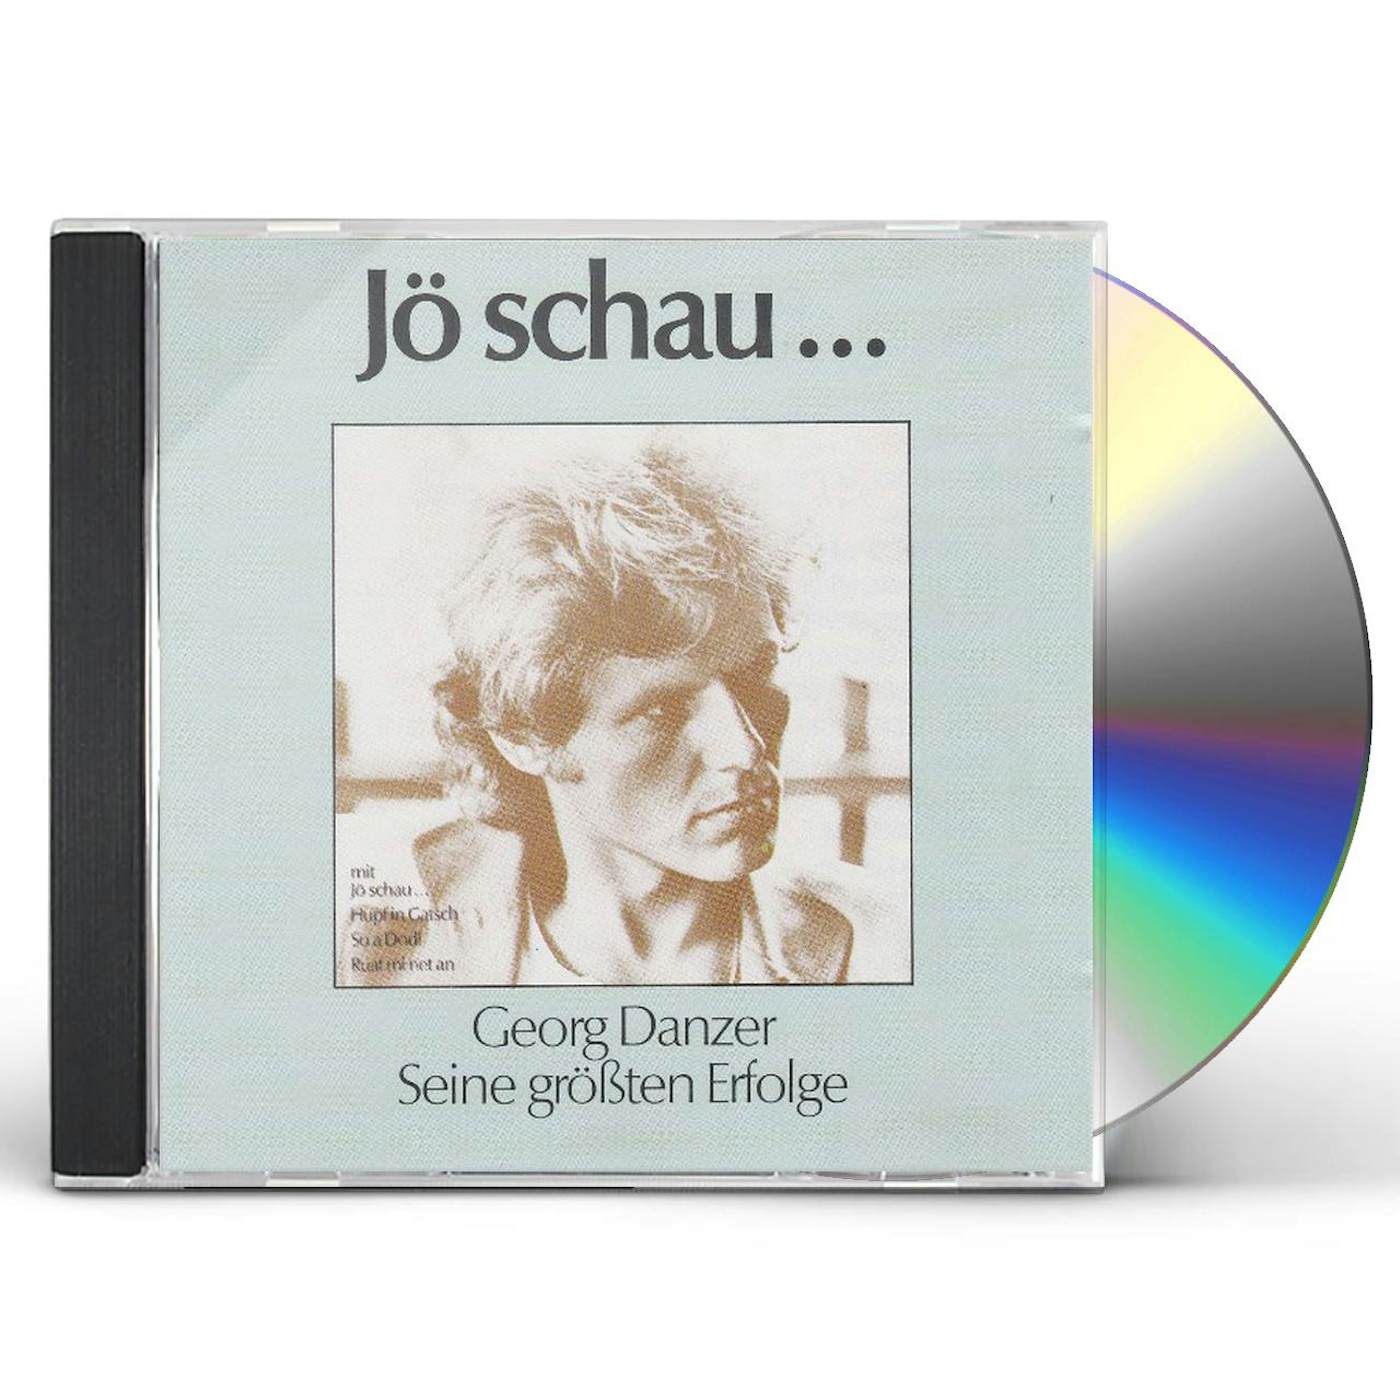 Georg Danzer JO SCHAU... SEINE GROSSTEN ERFOLGE CD